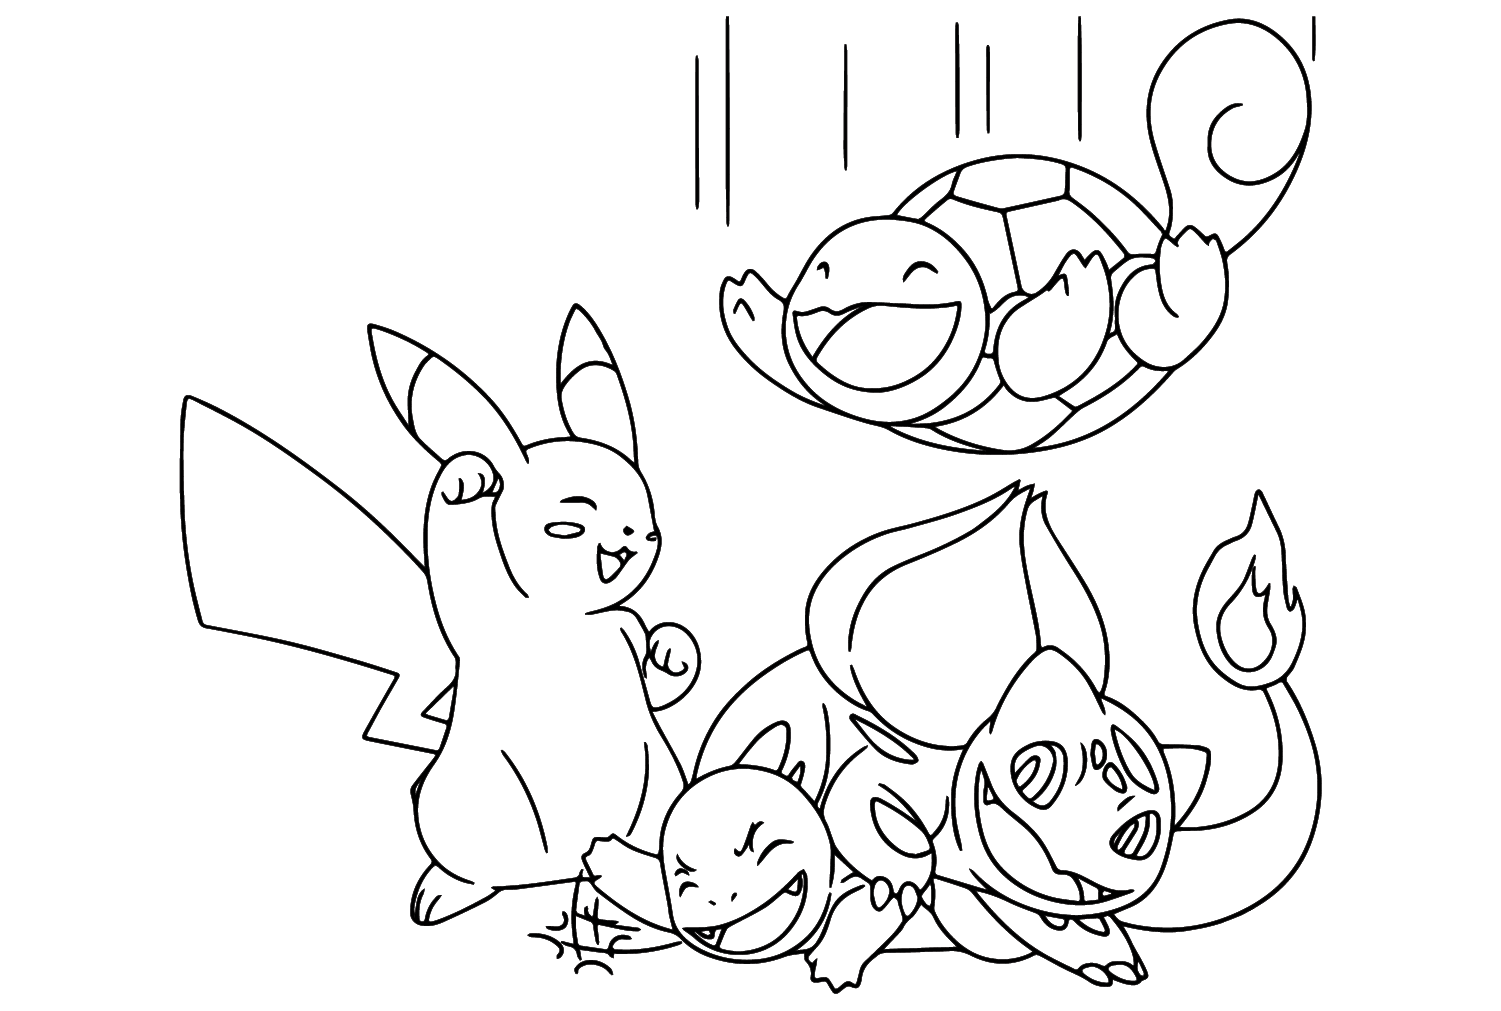 Página para colorir de Pikachu e Squirtle, Charmander e Bulbasaur de Charmander